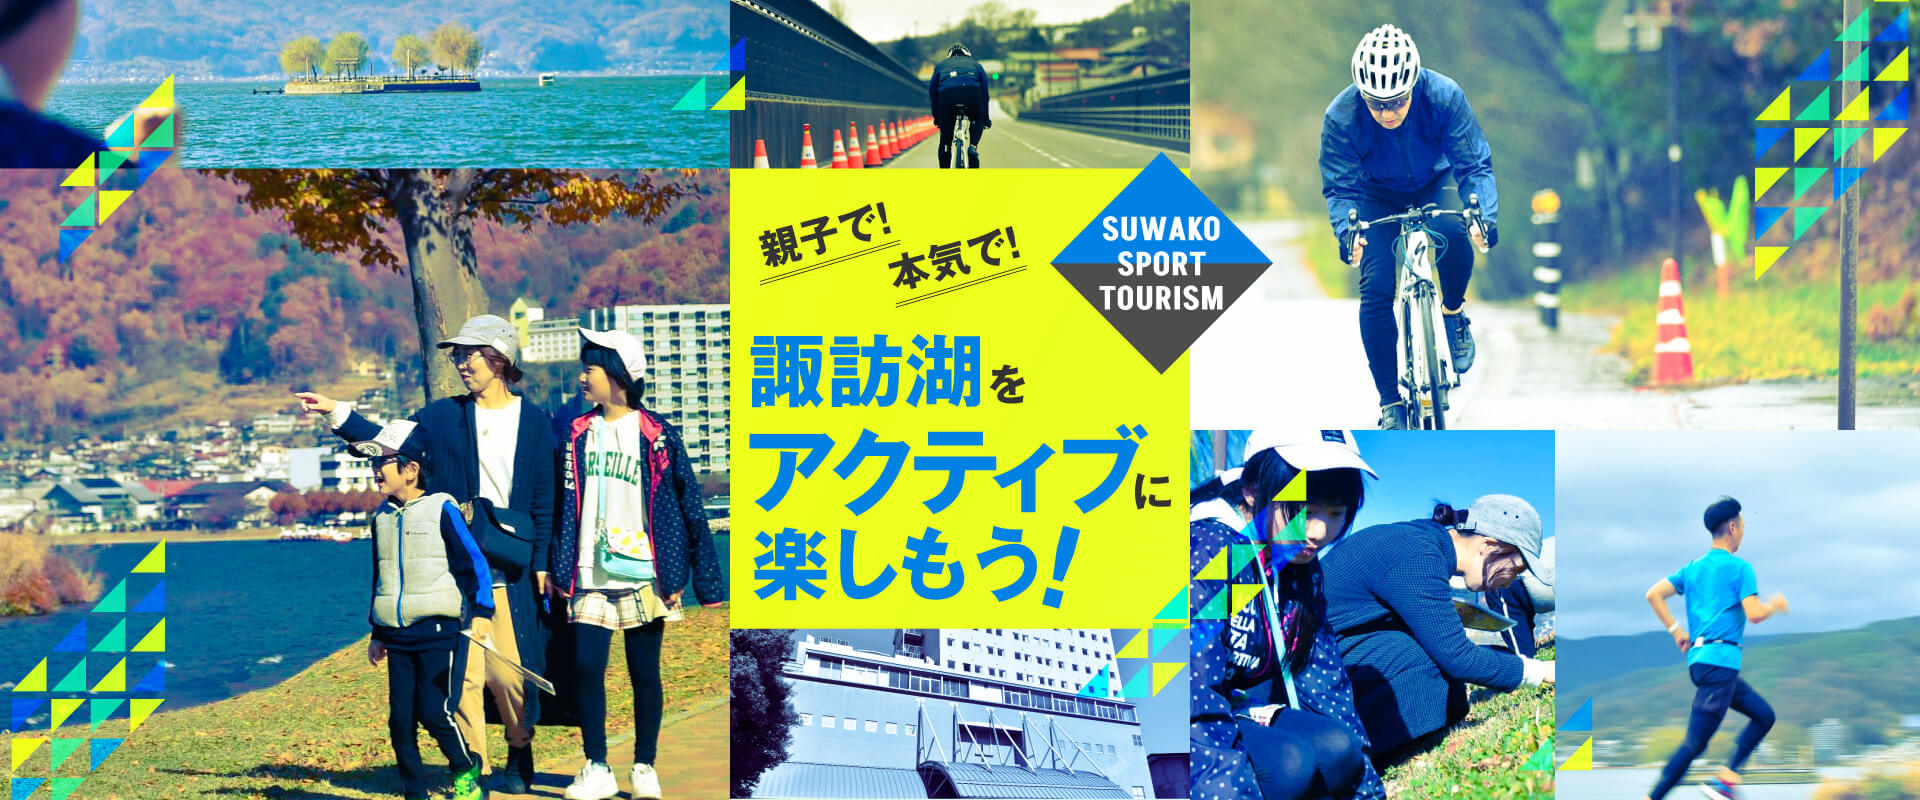 SUWAKO SPORT TOURISM『親子で！本気で！諏訪湖をアクティブに楽しもう！』